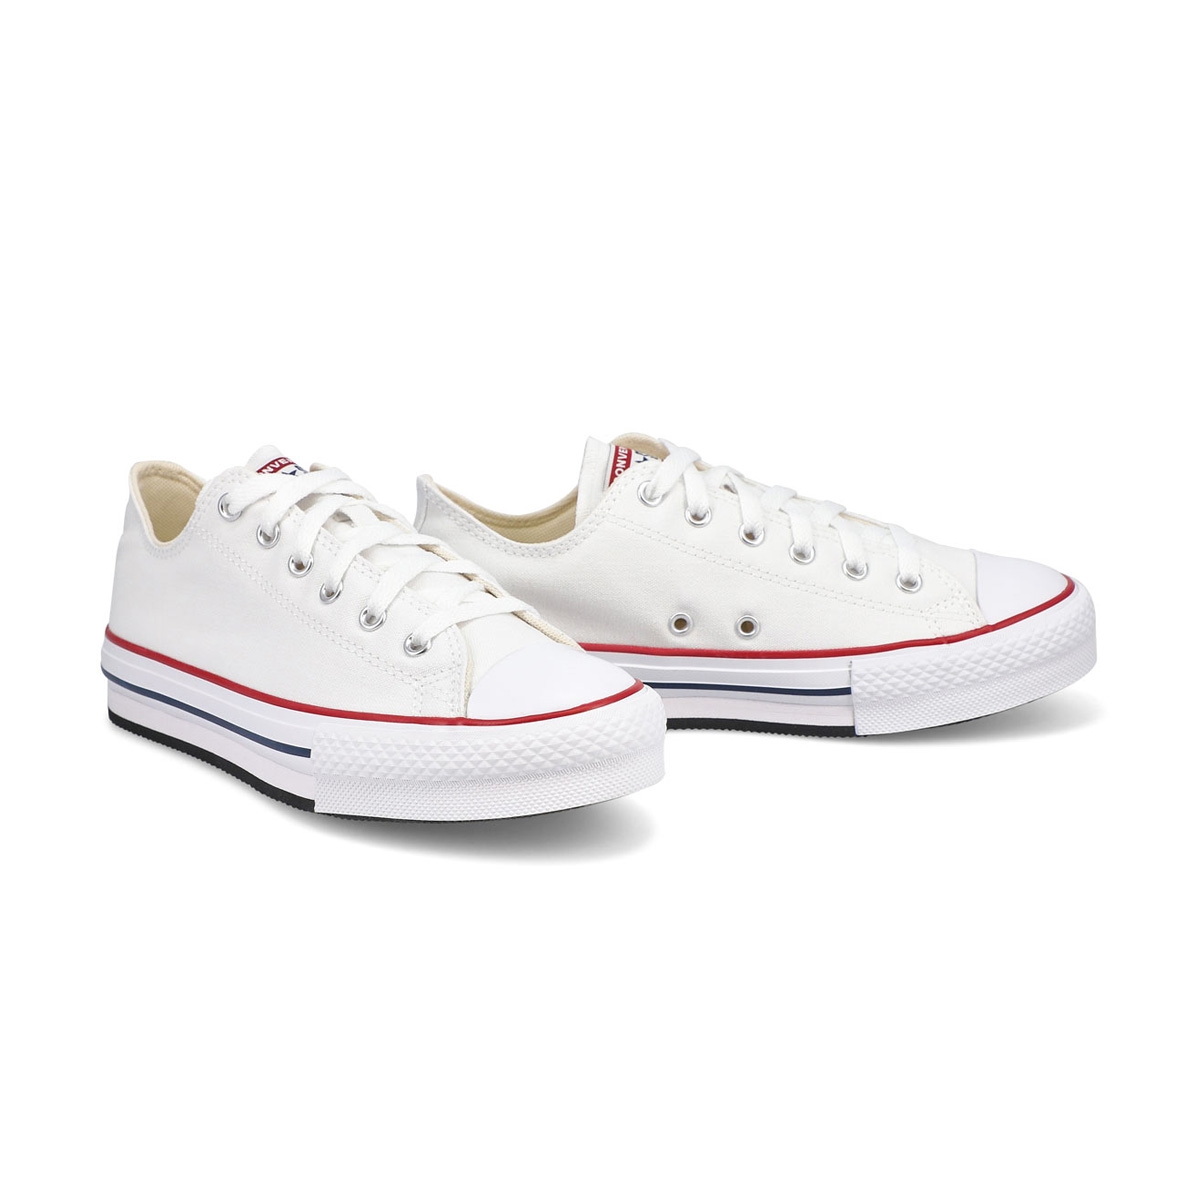 Girls' All Star Platform Sneaker - White